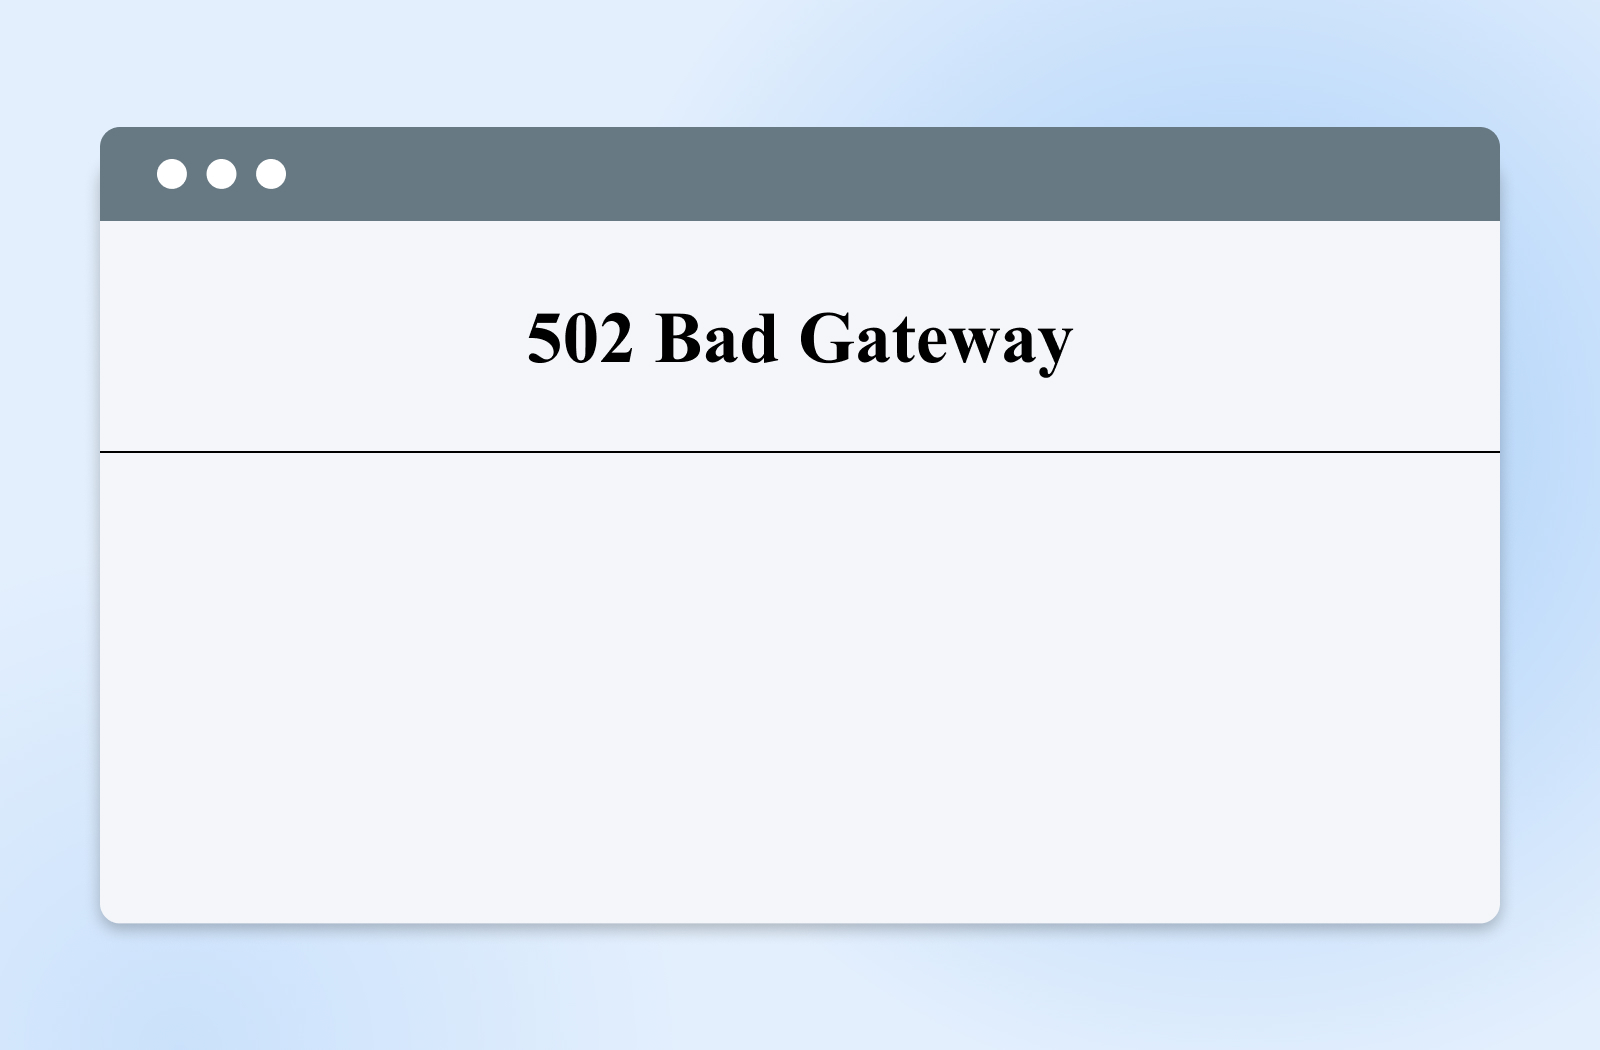 Ejemplo visual de un error 502 Gateway